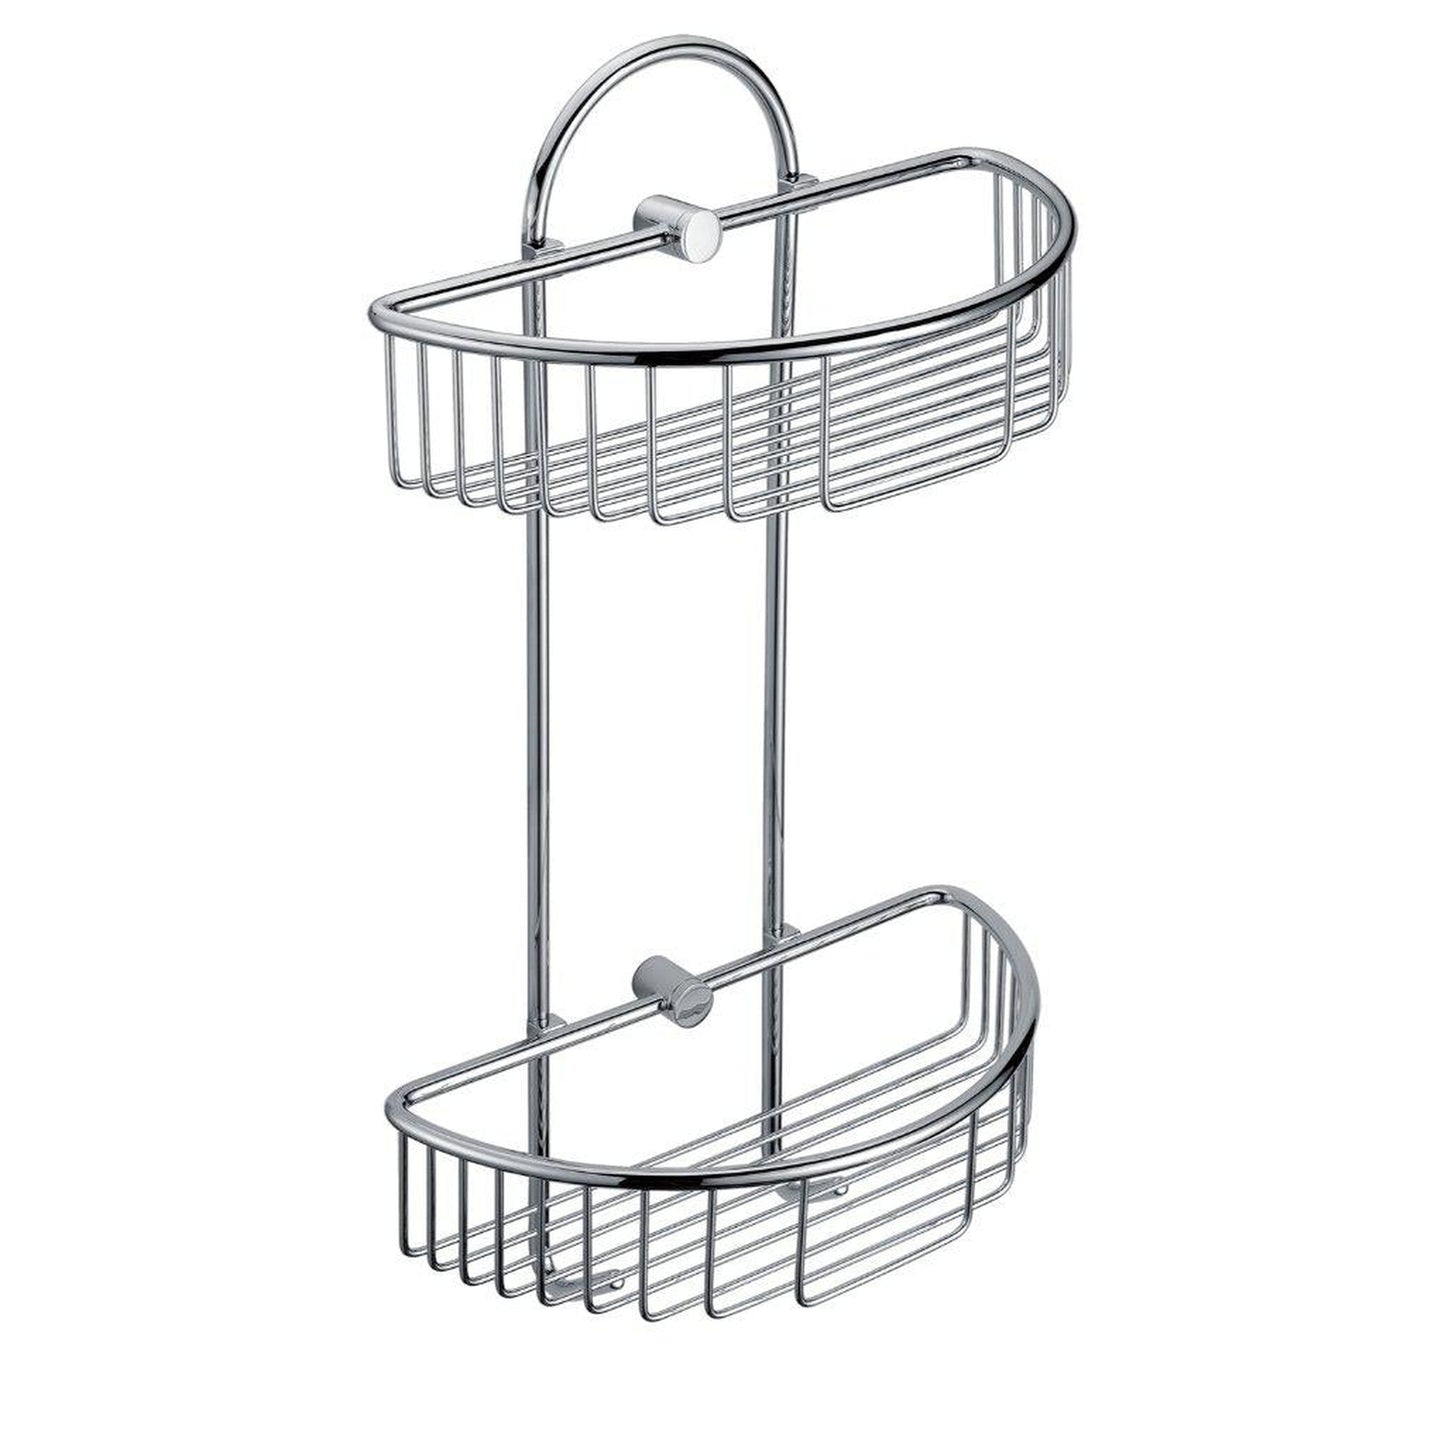 ALFI Brand AB9534 Polished Chrome Wall Mounted Double Basket Shower Shelf Bathroom Accessory